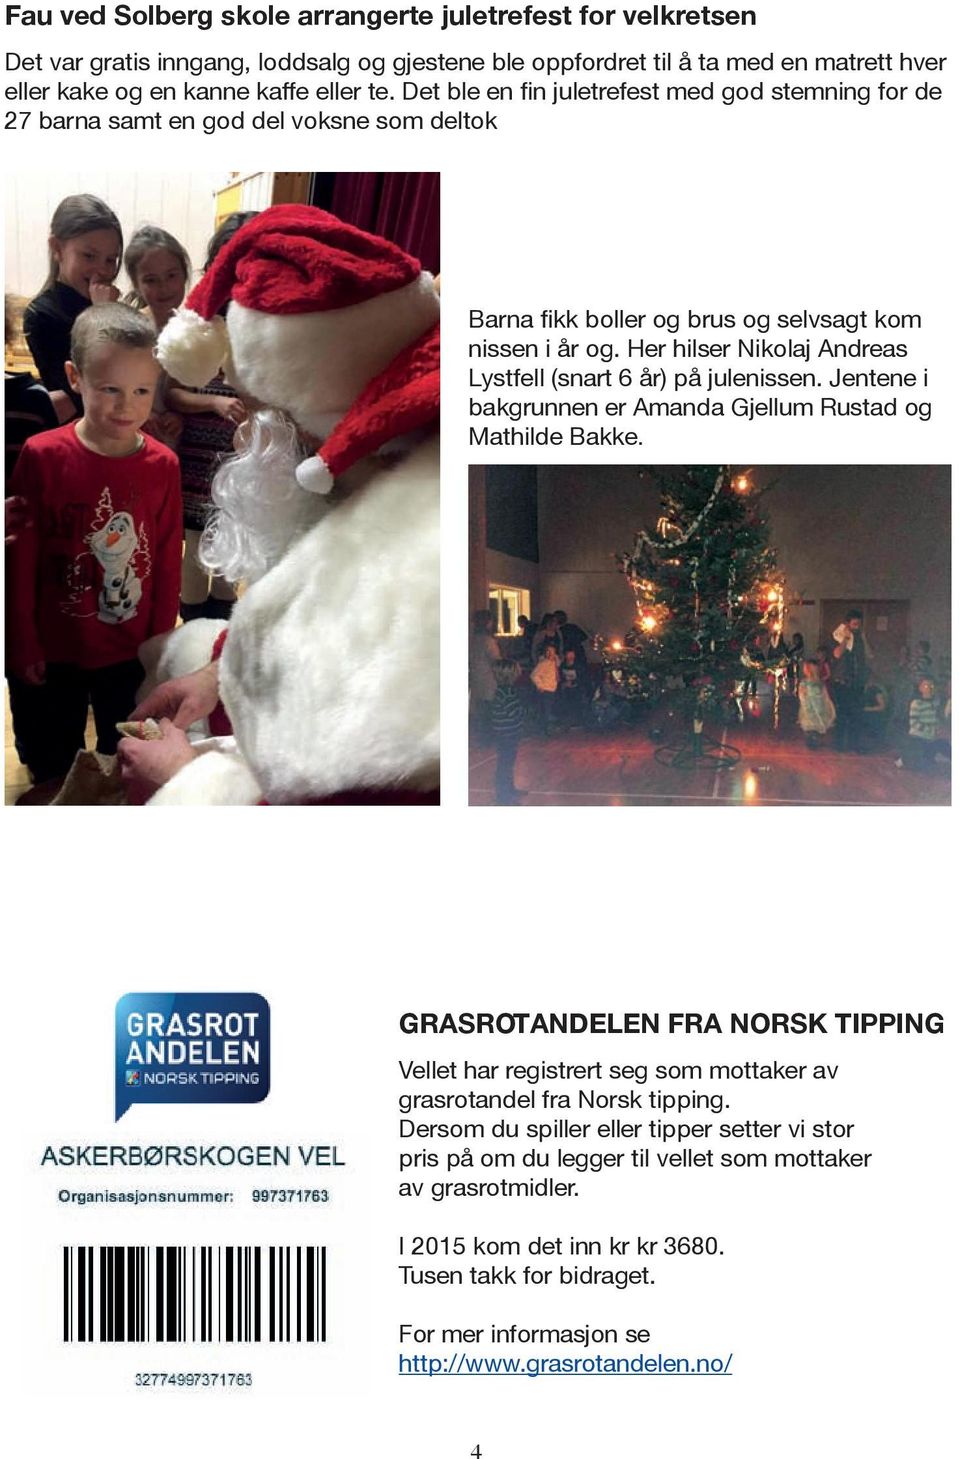 Her hilser Nikolaj Andreas Lystfell (snart 6 år) på julenissen. Jentene i bakgrunnen er Amanda Gjellum Rustad og Mathilde Bakke.